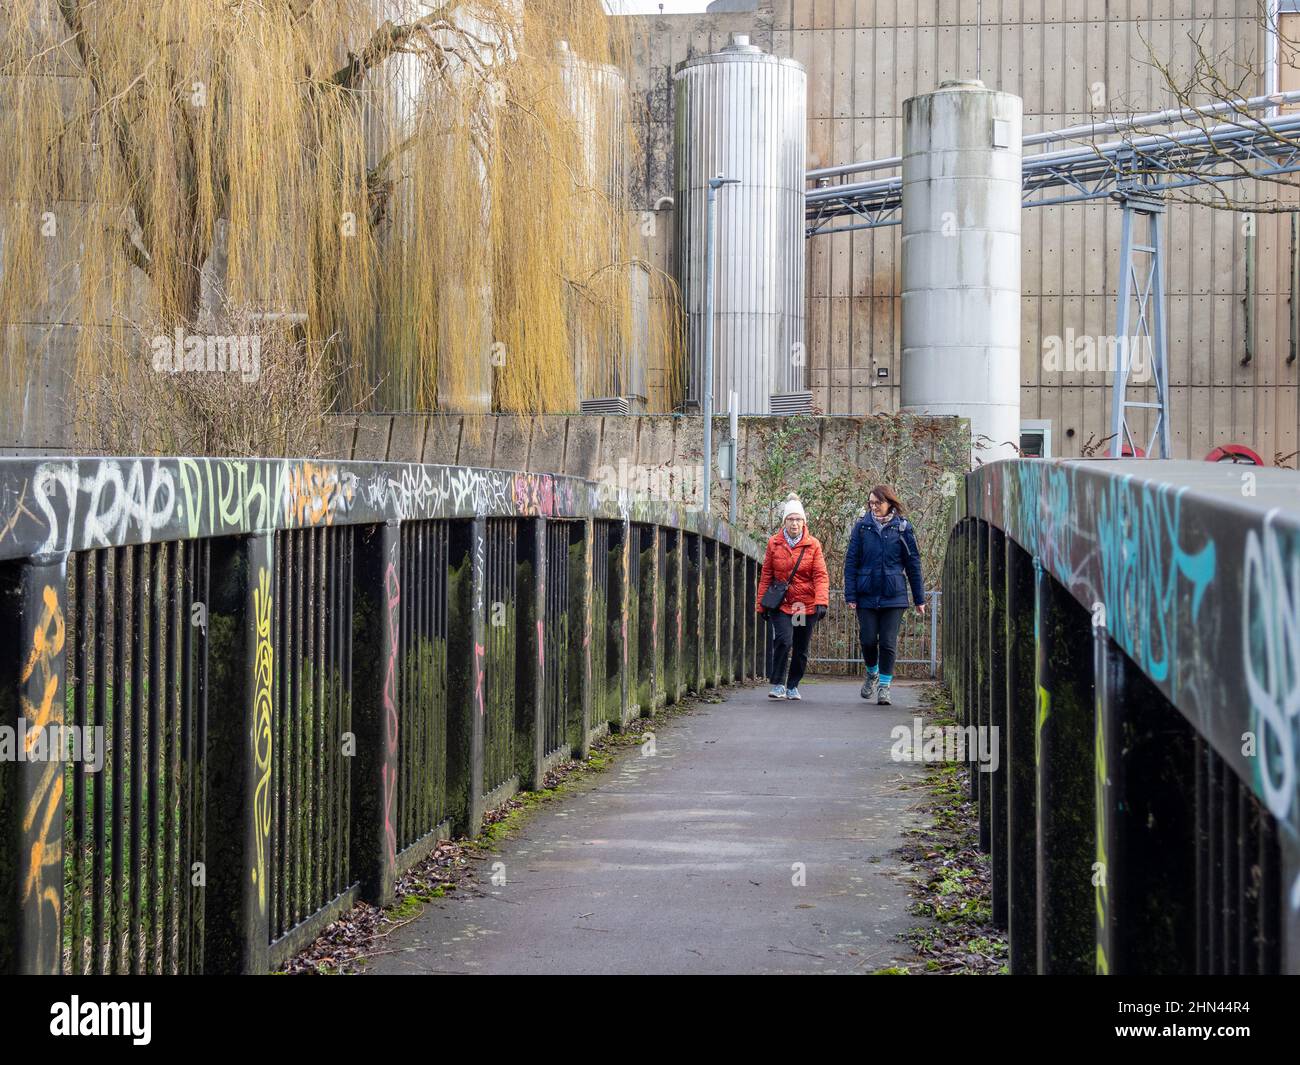 Ein Graffiti sprühte eine Fußgängerbrücke vor einem industriellen Hintergrund, Northampton, Großbritannien; zwei Frauen eilten über die Brücke Stockfoto